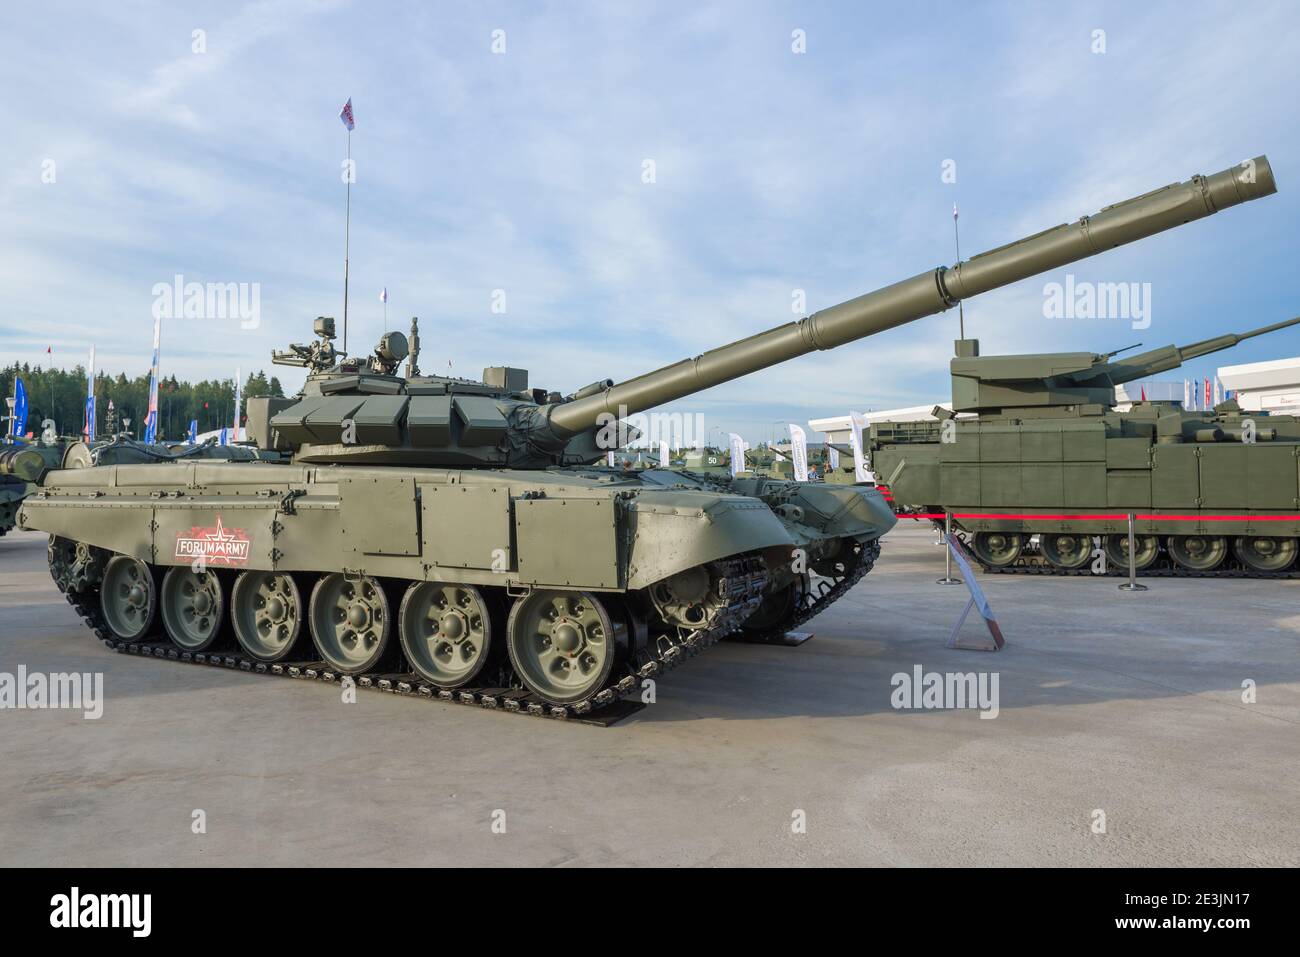 REGION MOSKAU, RUSSLAND - 25. AUGUST 2020: Der wichtigste russische Kampfpanzer T-72B3 auf dem internationalen Militärforum 'Army-2020' Stockfoto